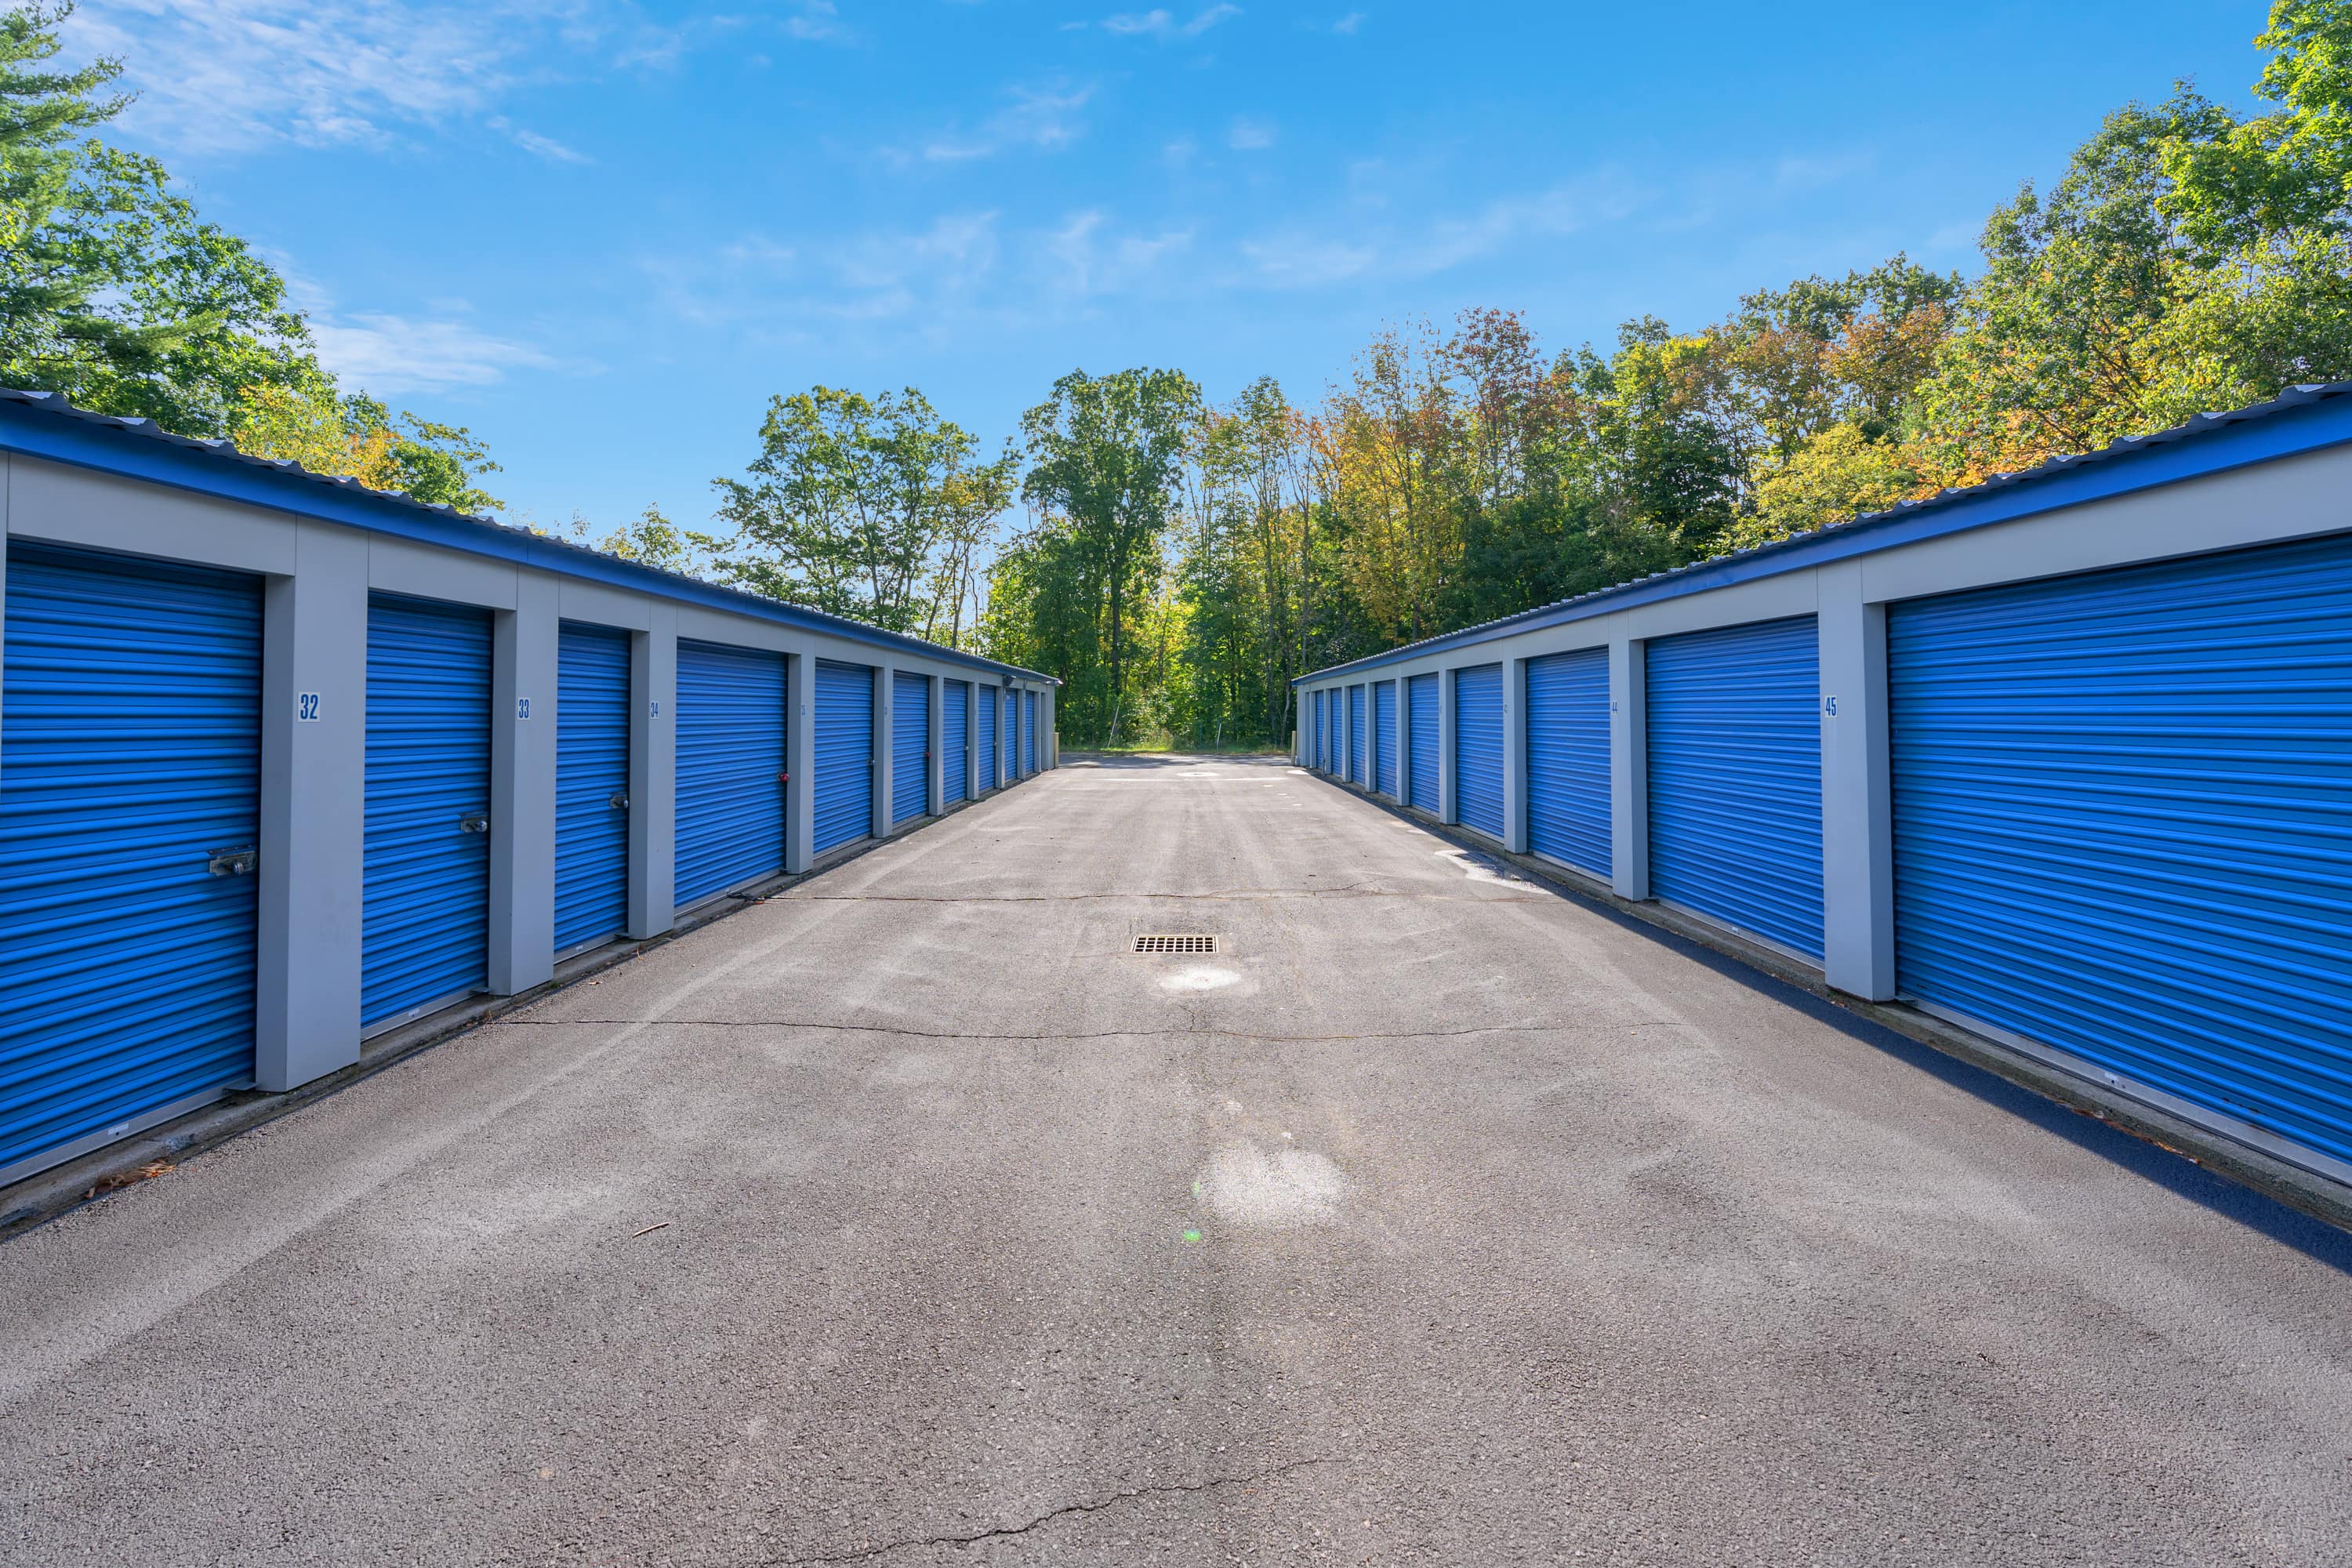 SpareBox Storage has storage units near Rochester, NH, to help with any self-storage needs | SpareBox Storage